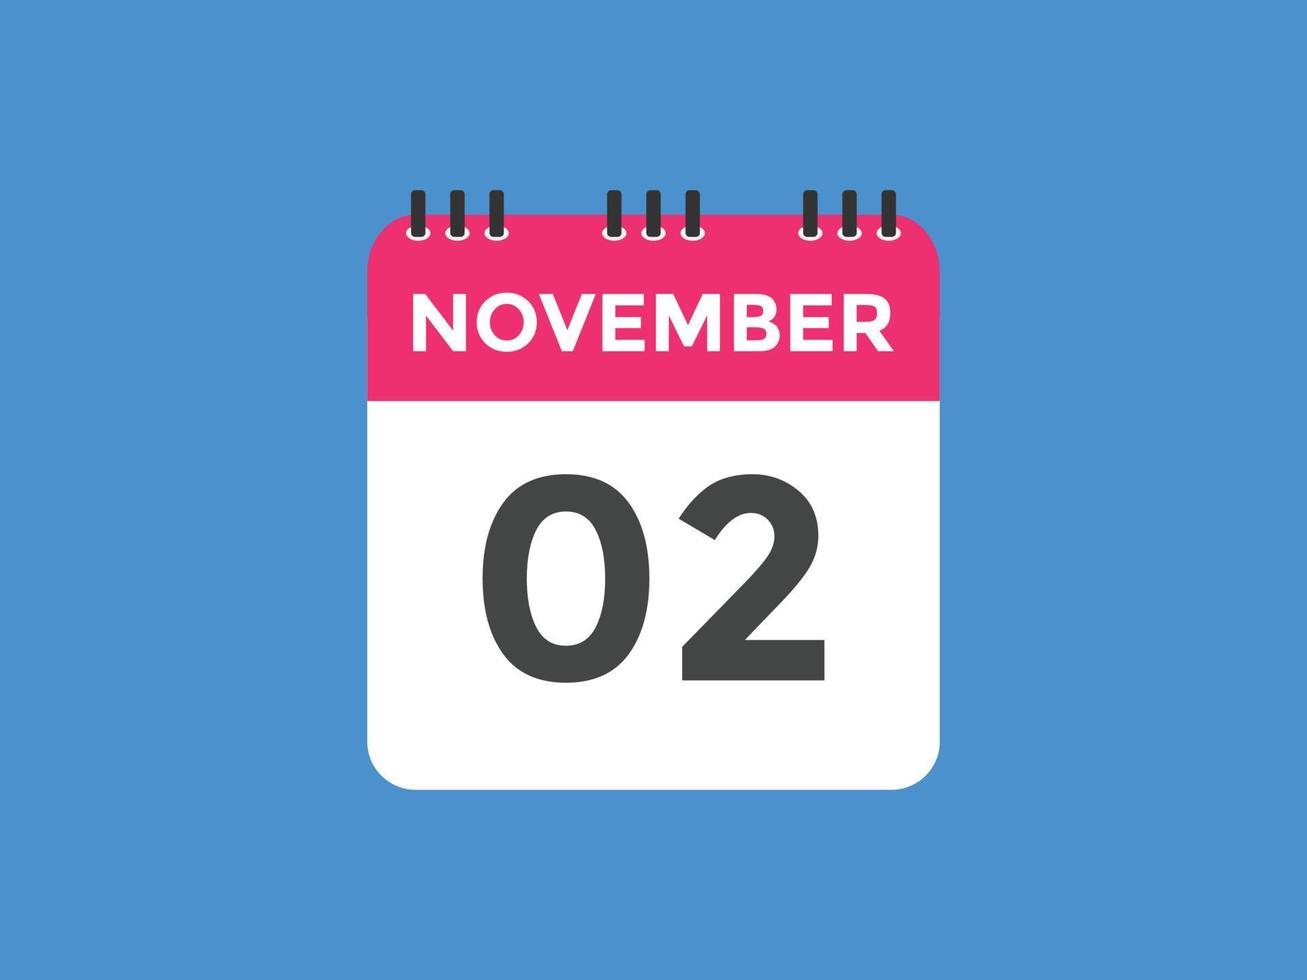 Recordatorio del calendario del 2 de noviembre. Plantilla de icono de calendario diario del 2 de noviembre. plantilla de diseño de icono de calendario 2 de noviembre. ilustración vectorial vector